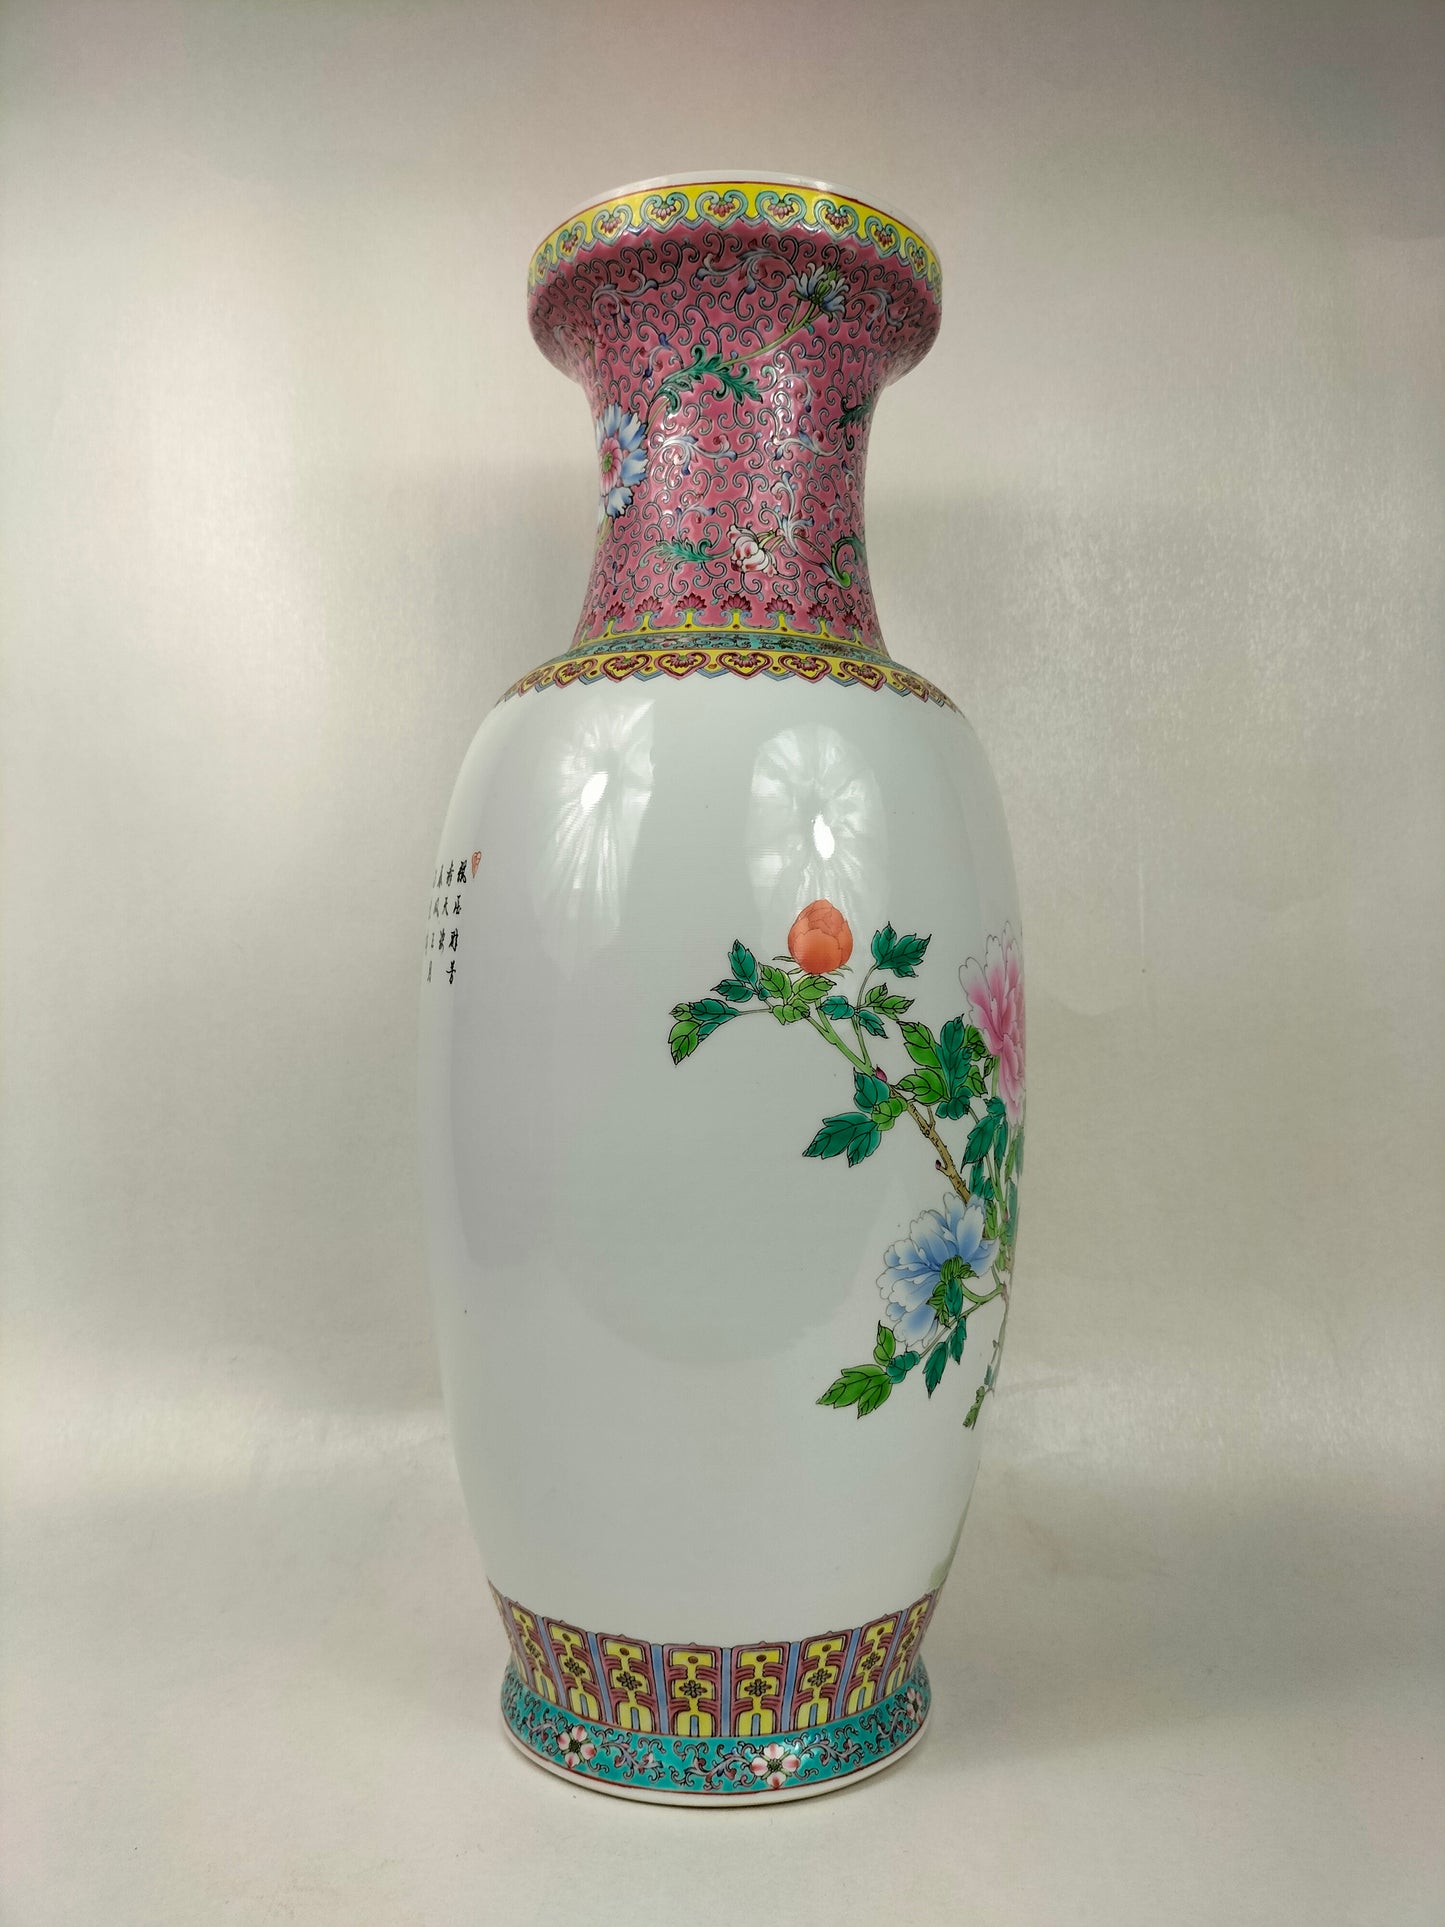 Grand vase chinois famille rose à décor de fleurs // Jingdezhen - 20ème siècle